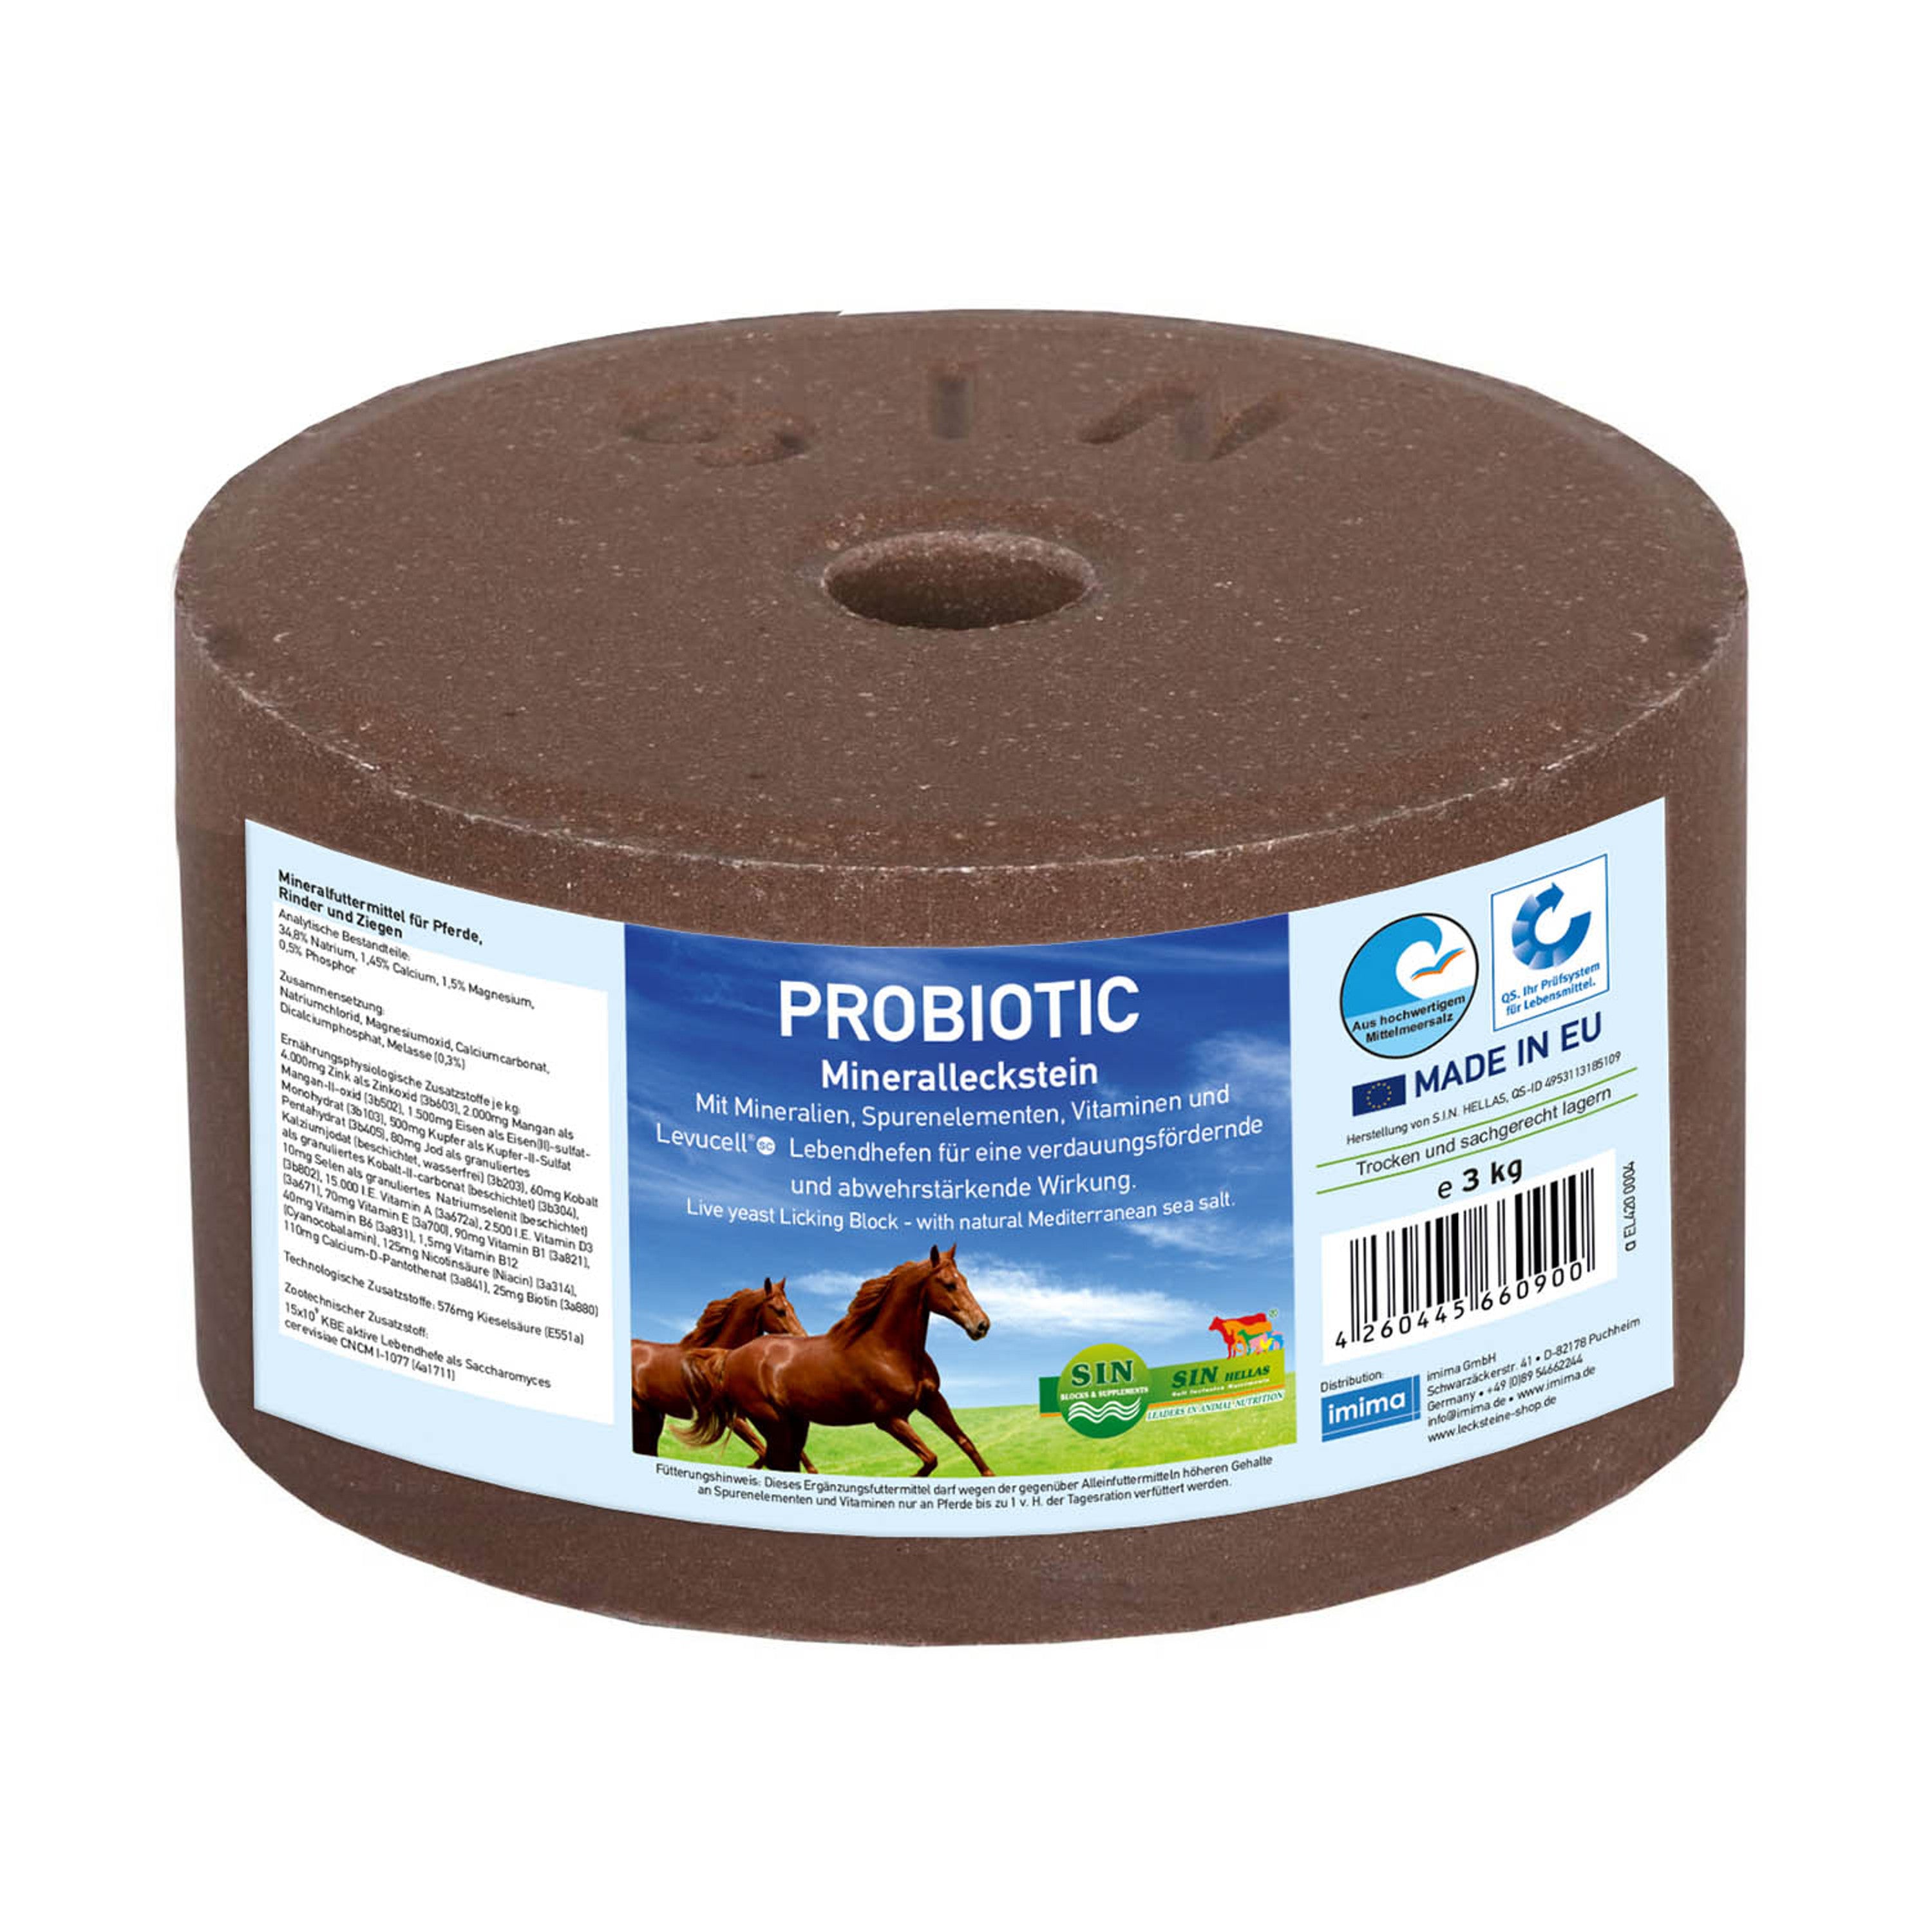 Probiotic nyalósó élesztővel és probiotikumokkal, emésztéstámogató hatással, 3 kg